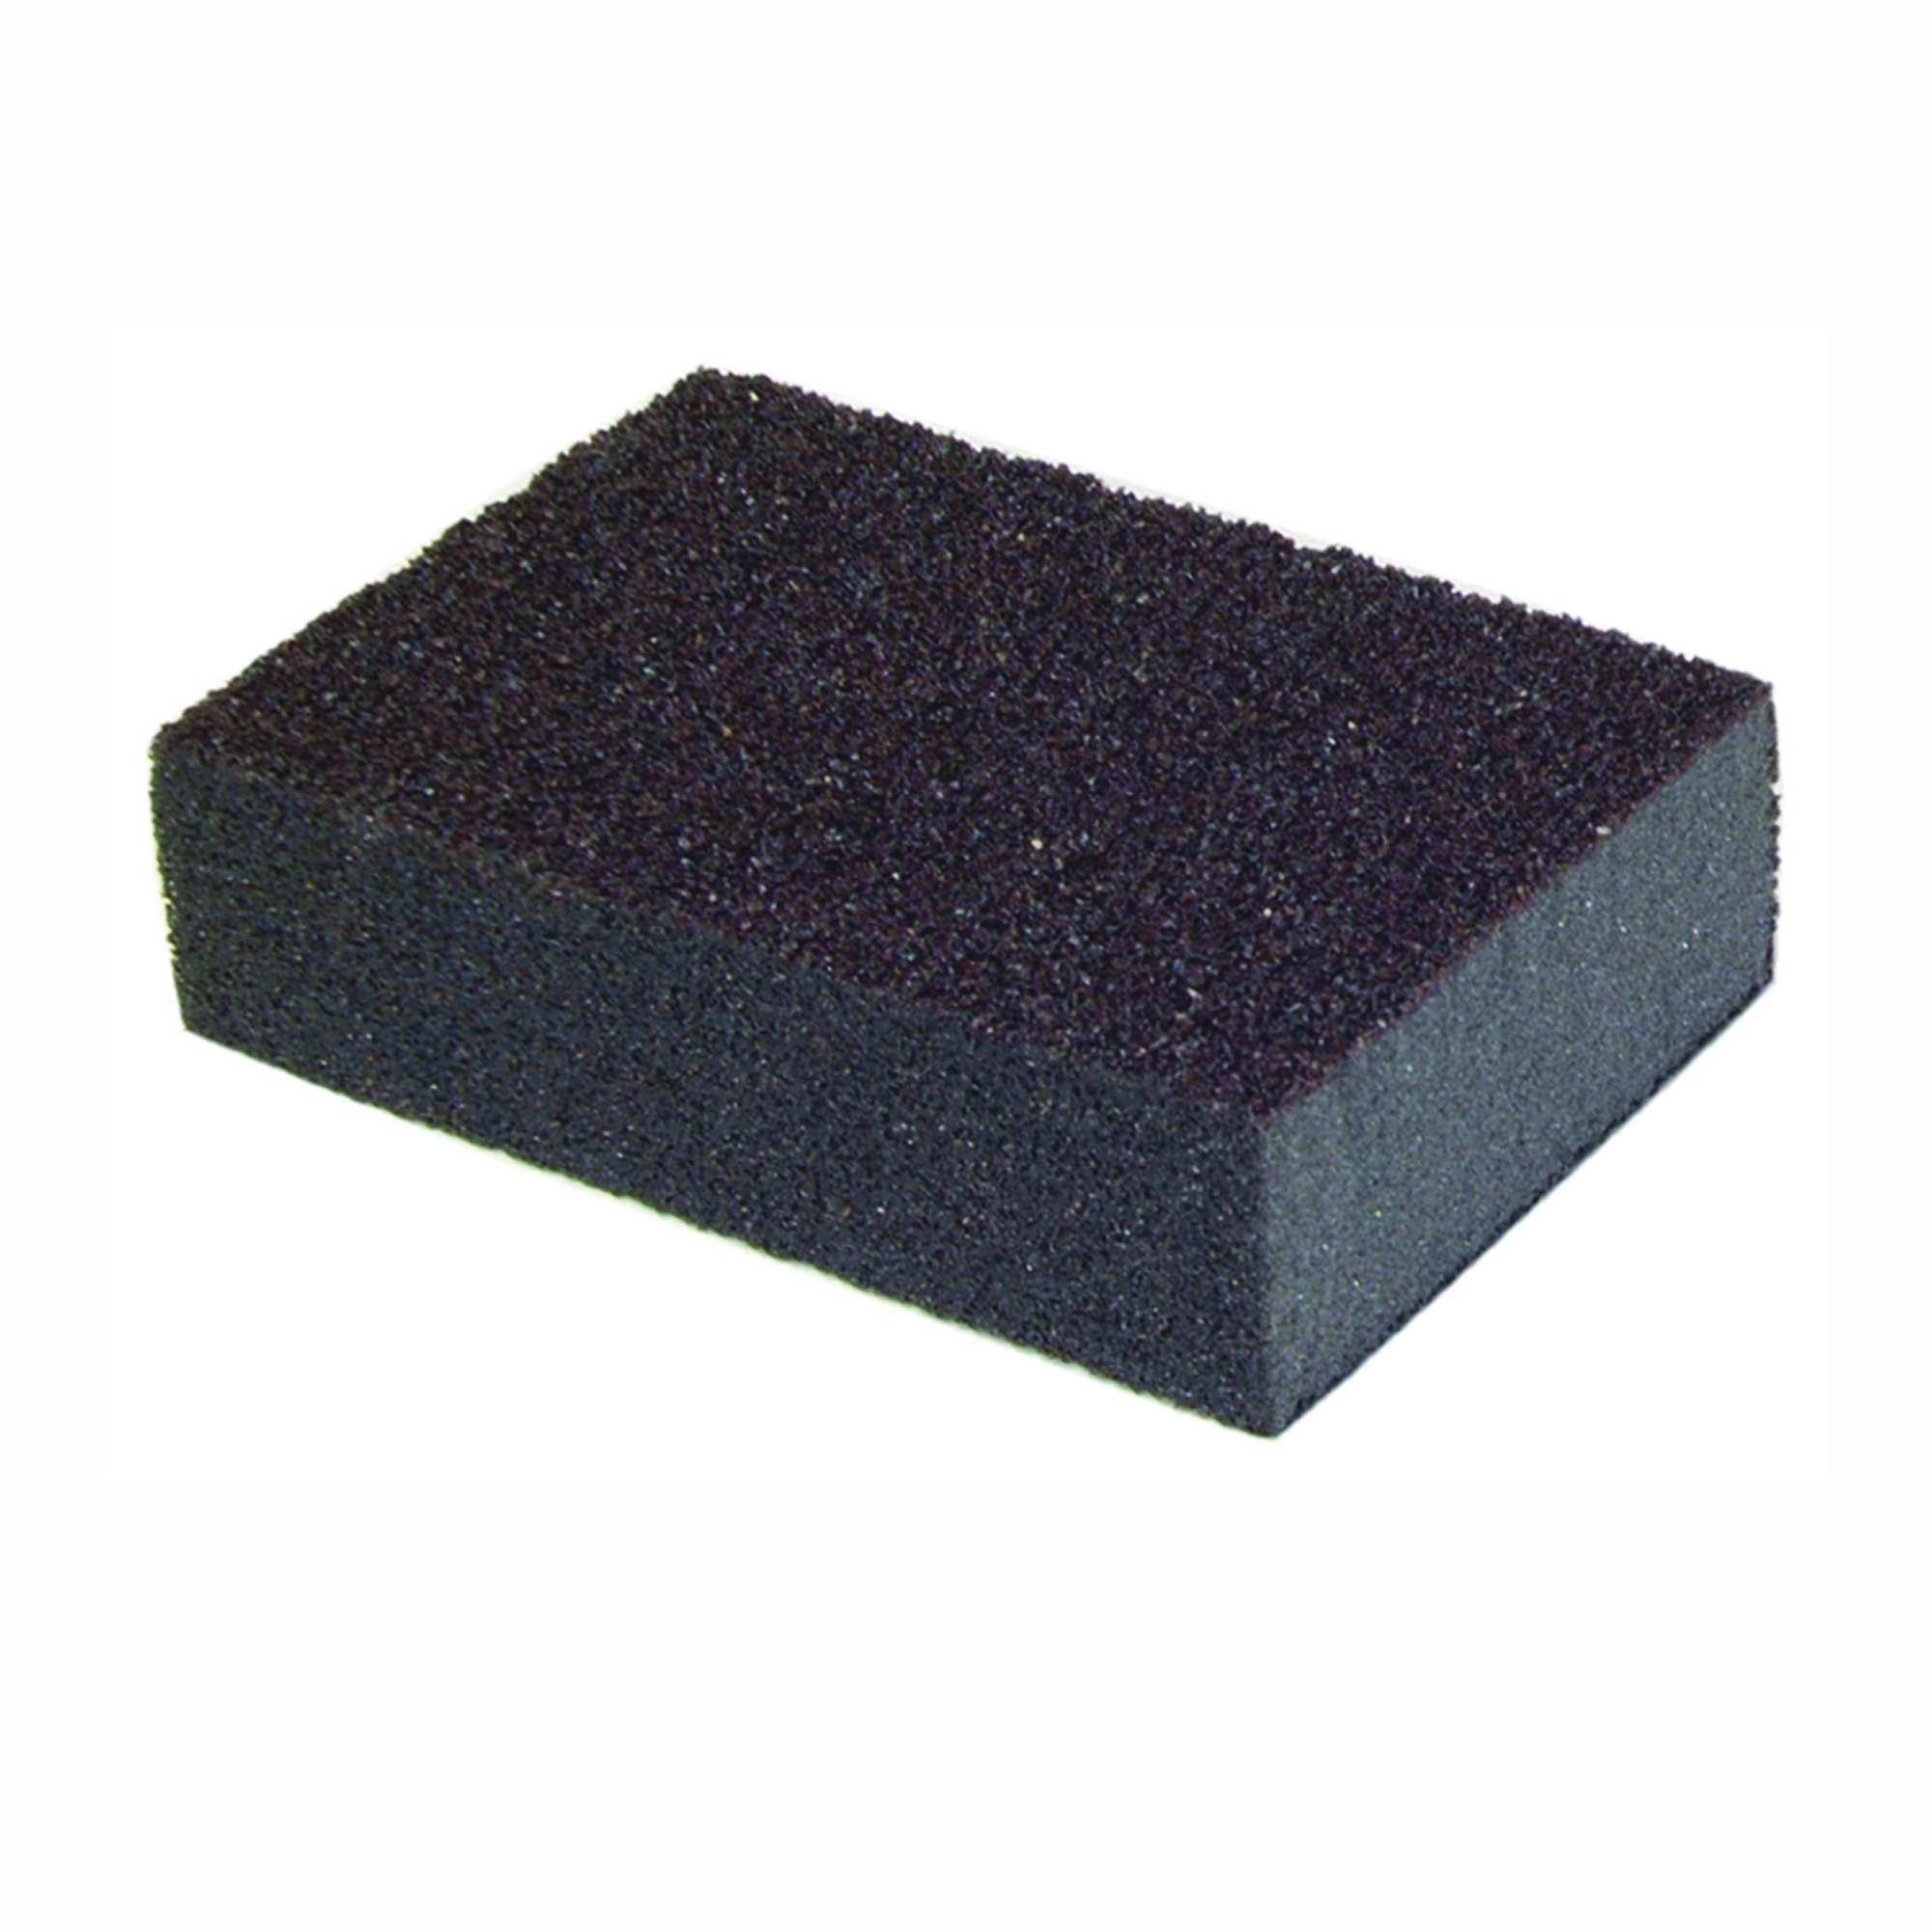 MultiSand 49503 Sanding Sponge, 4 in L, 2-3/4 in W, Coarse, Medium